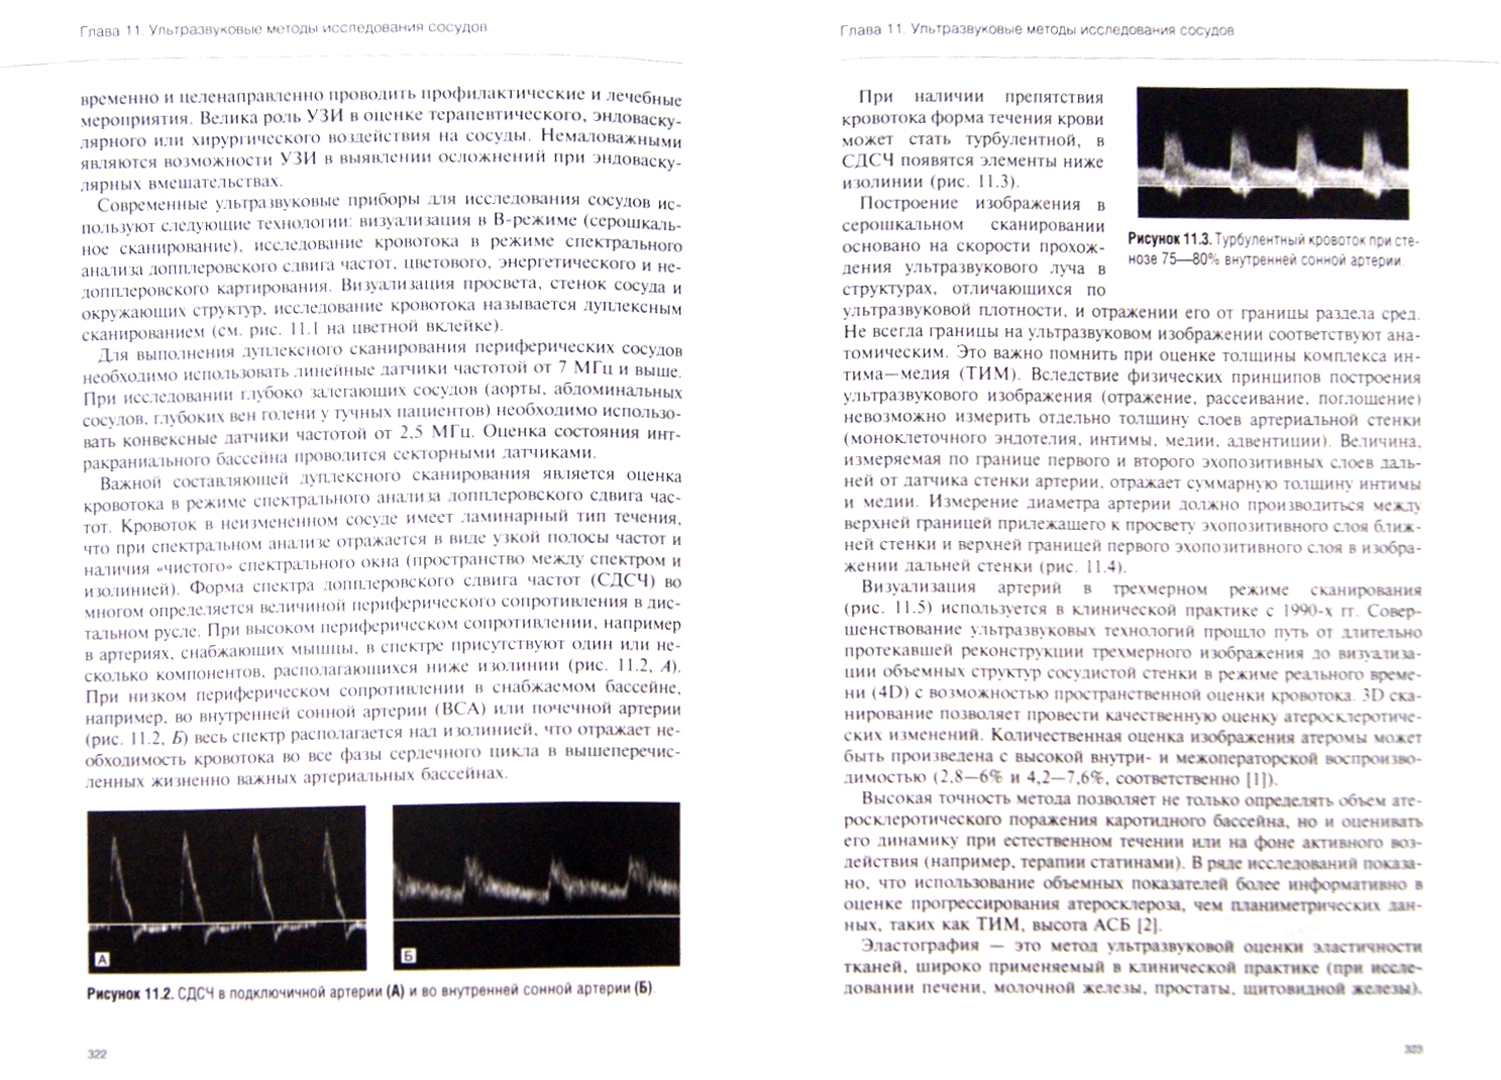 Иллюстрация 1 из 29 для Руководство по кардиологии. Том 2. Методы диагностики сердечно-сосудистых заболеваний | Лабиринт - книги. Источник: Лабиринт